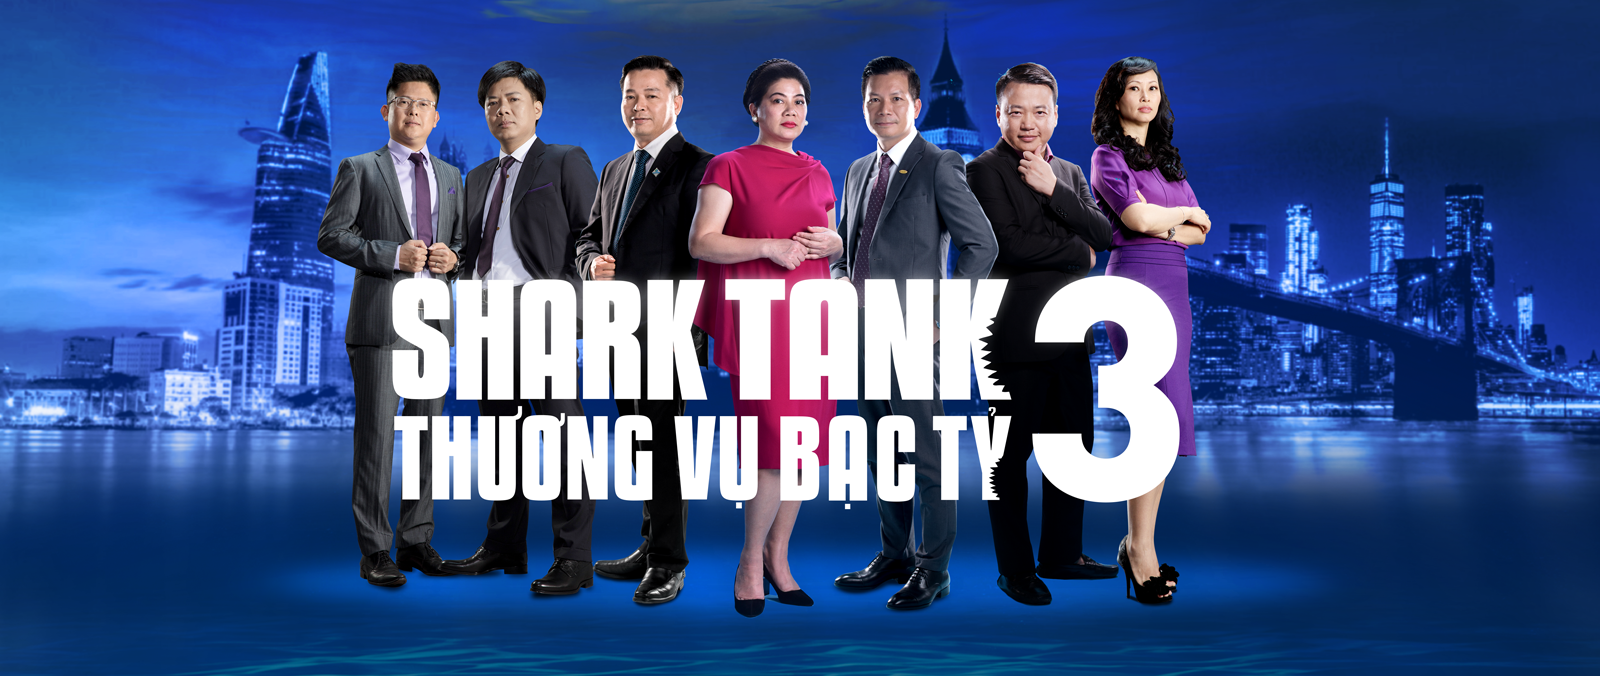 Shark Tank Việt Nam – Thương Vụ Bạc Tỉ